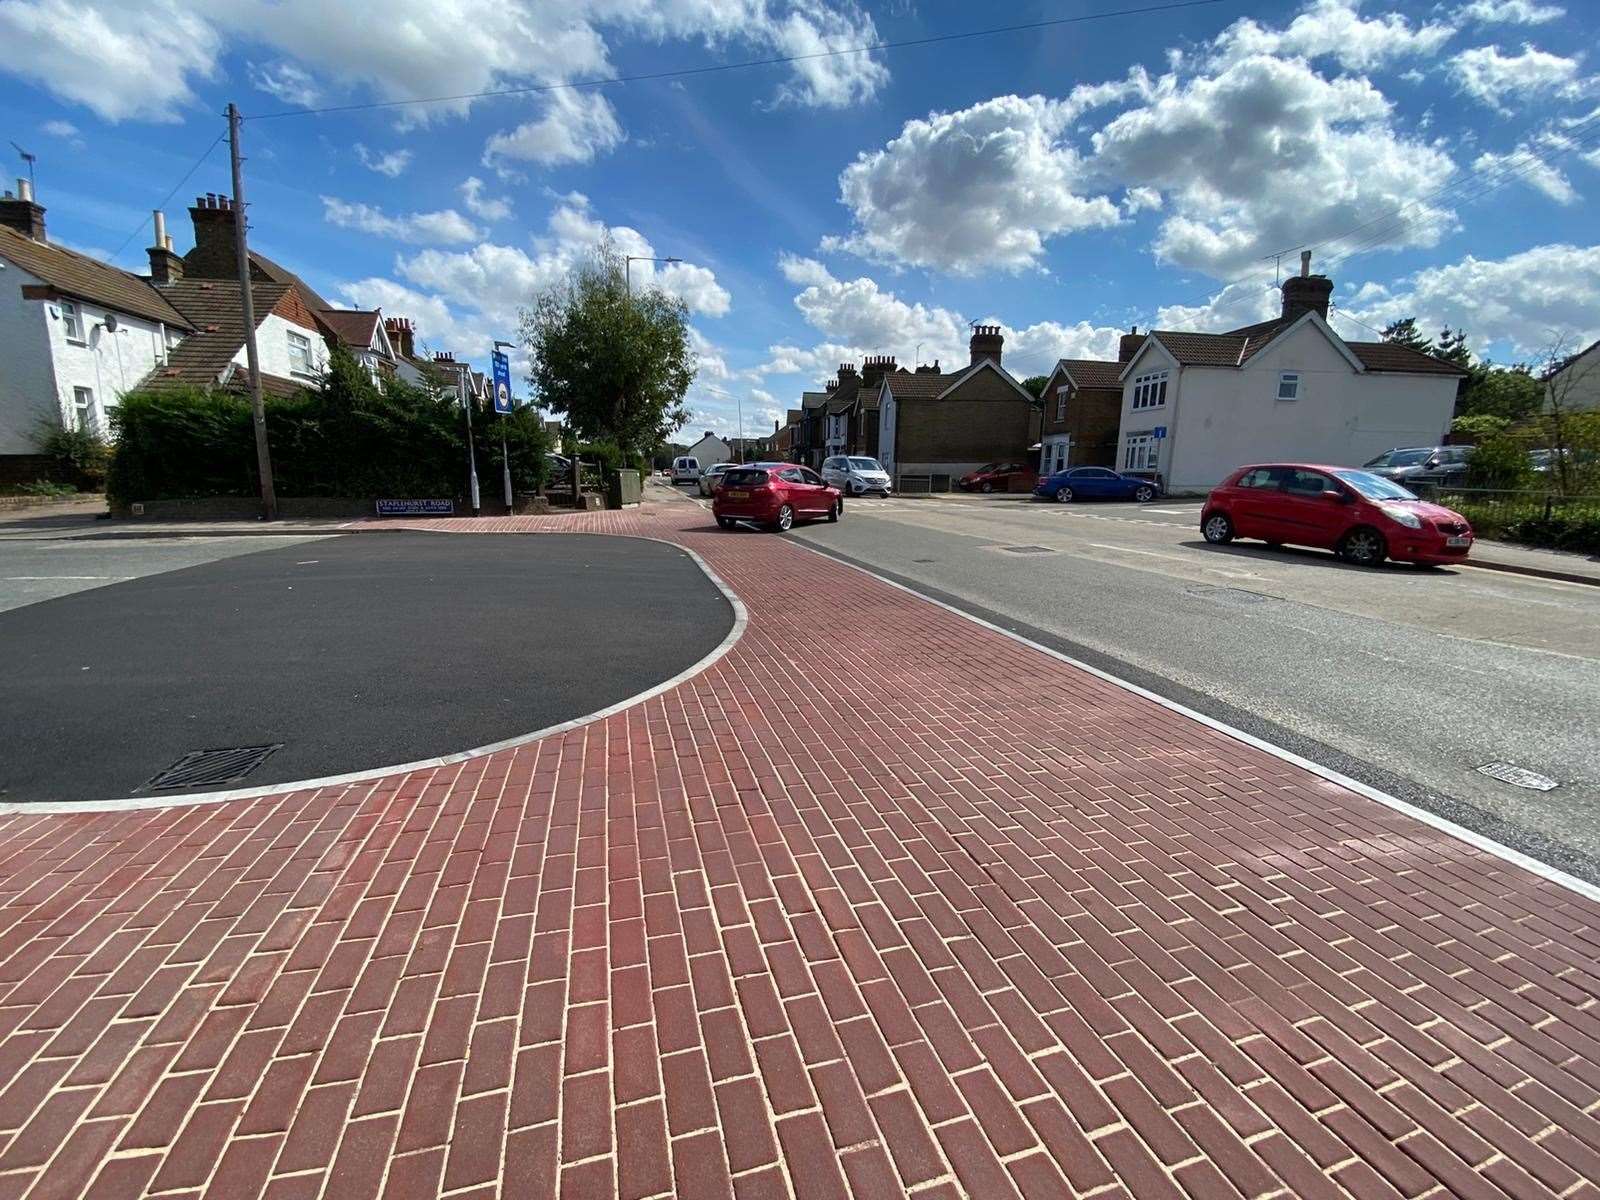 The new Staplehurst Road junction design along London Road